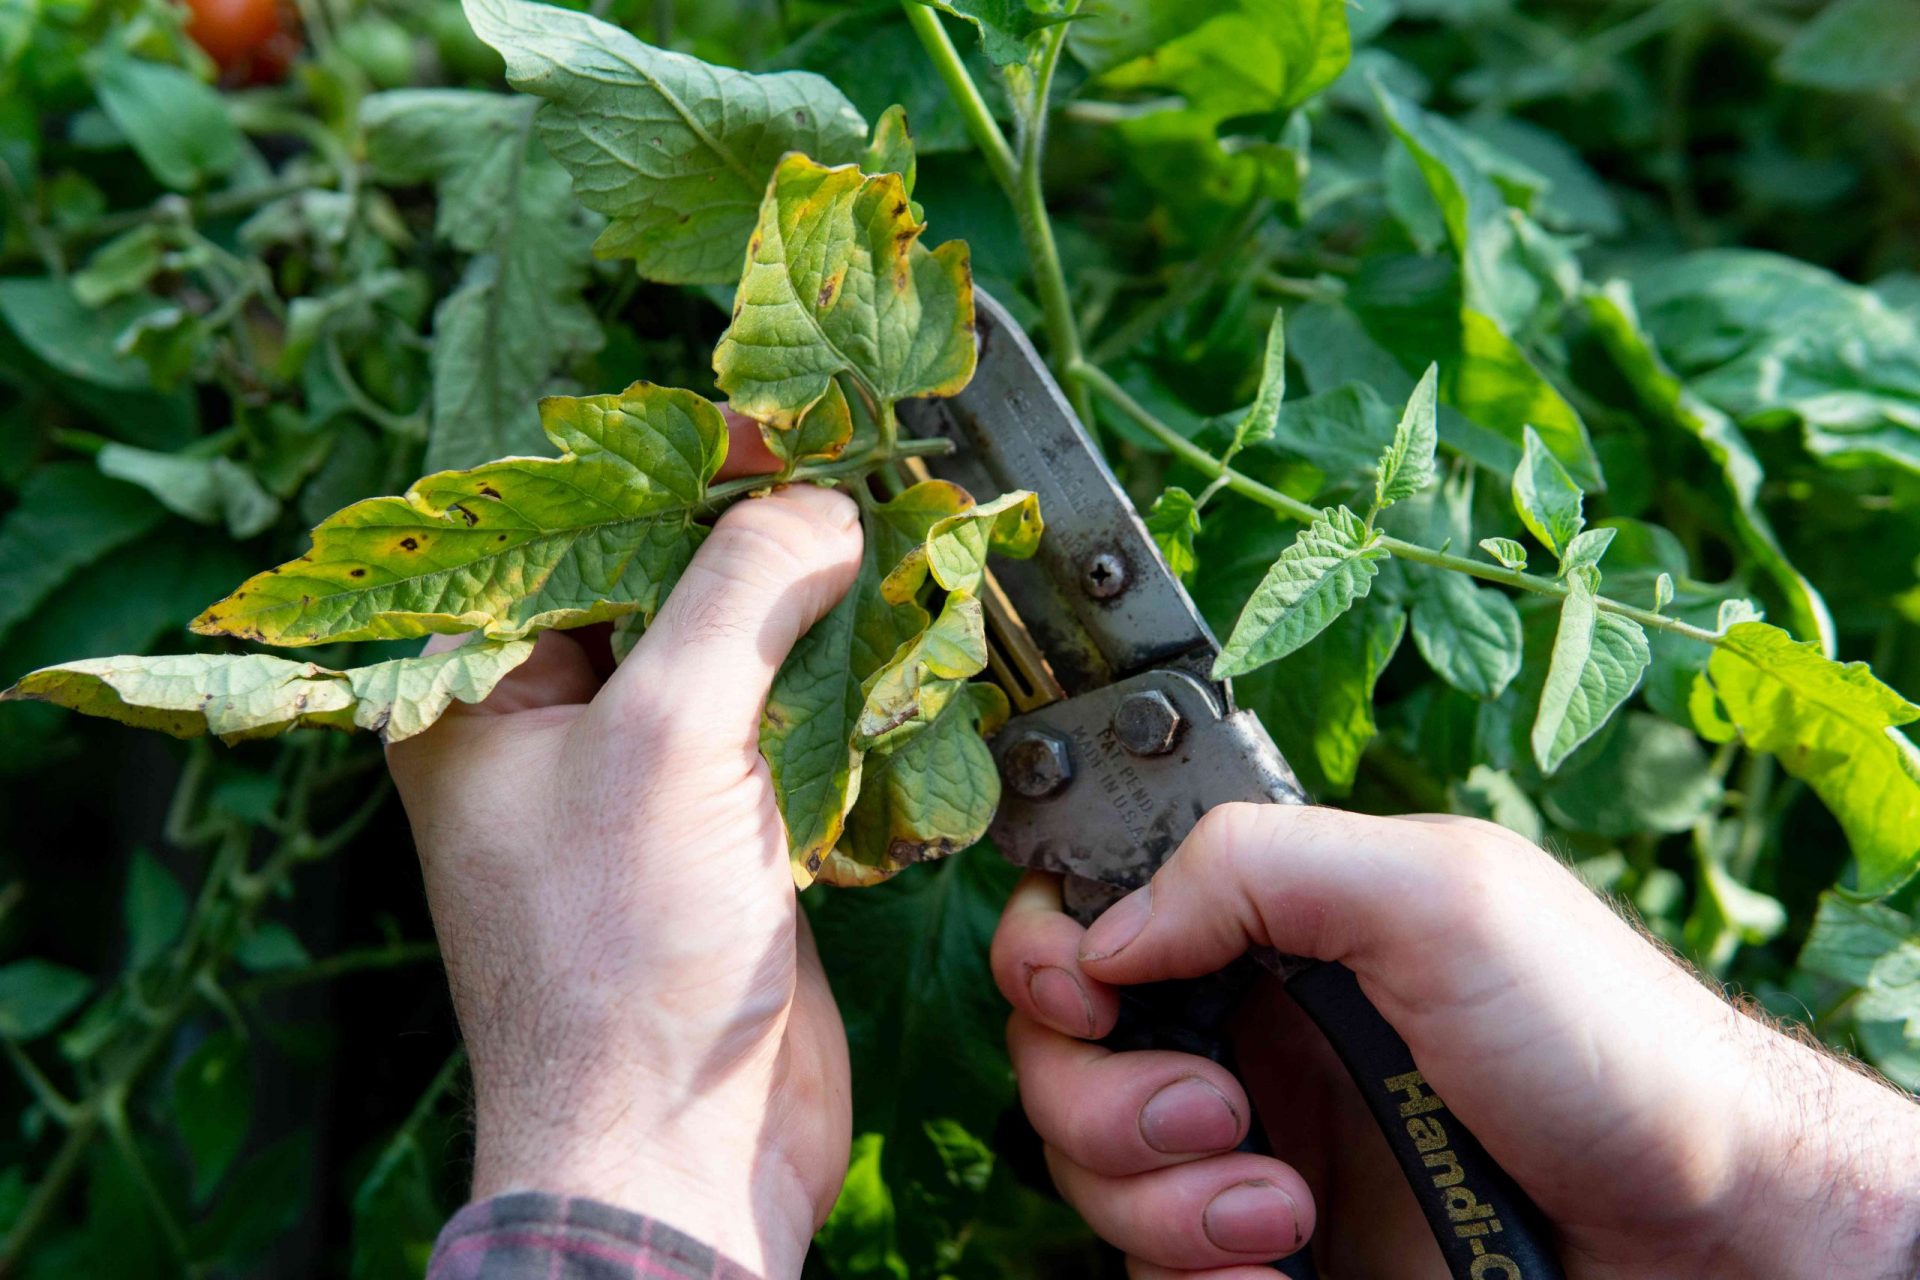 dos manos cortan las plantas con una herramienta metálica